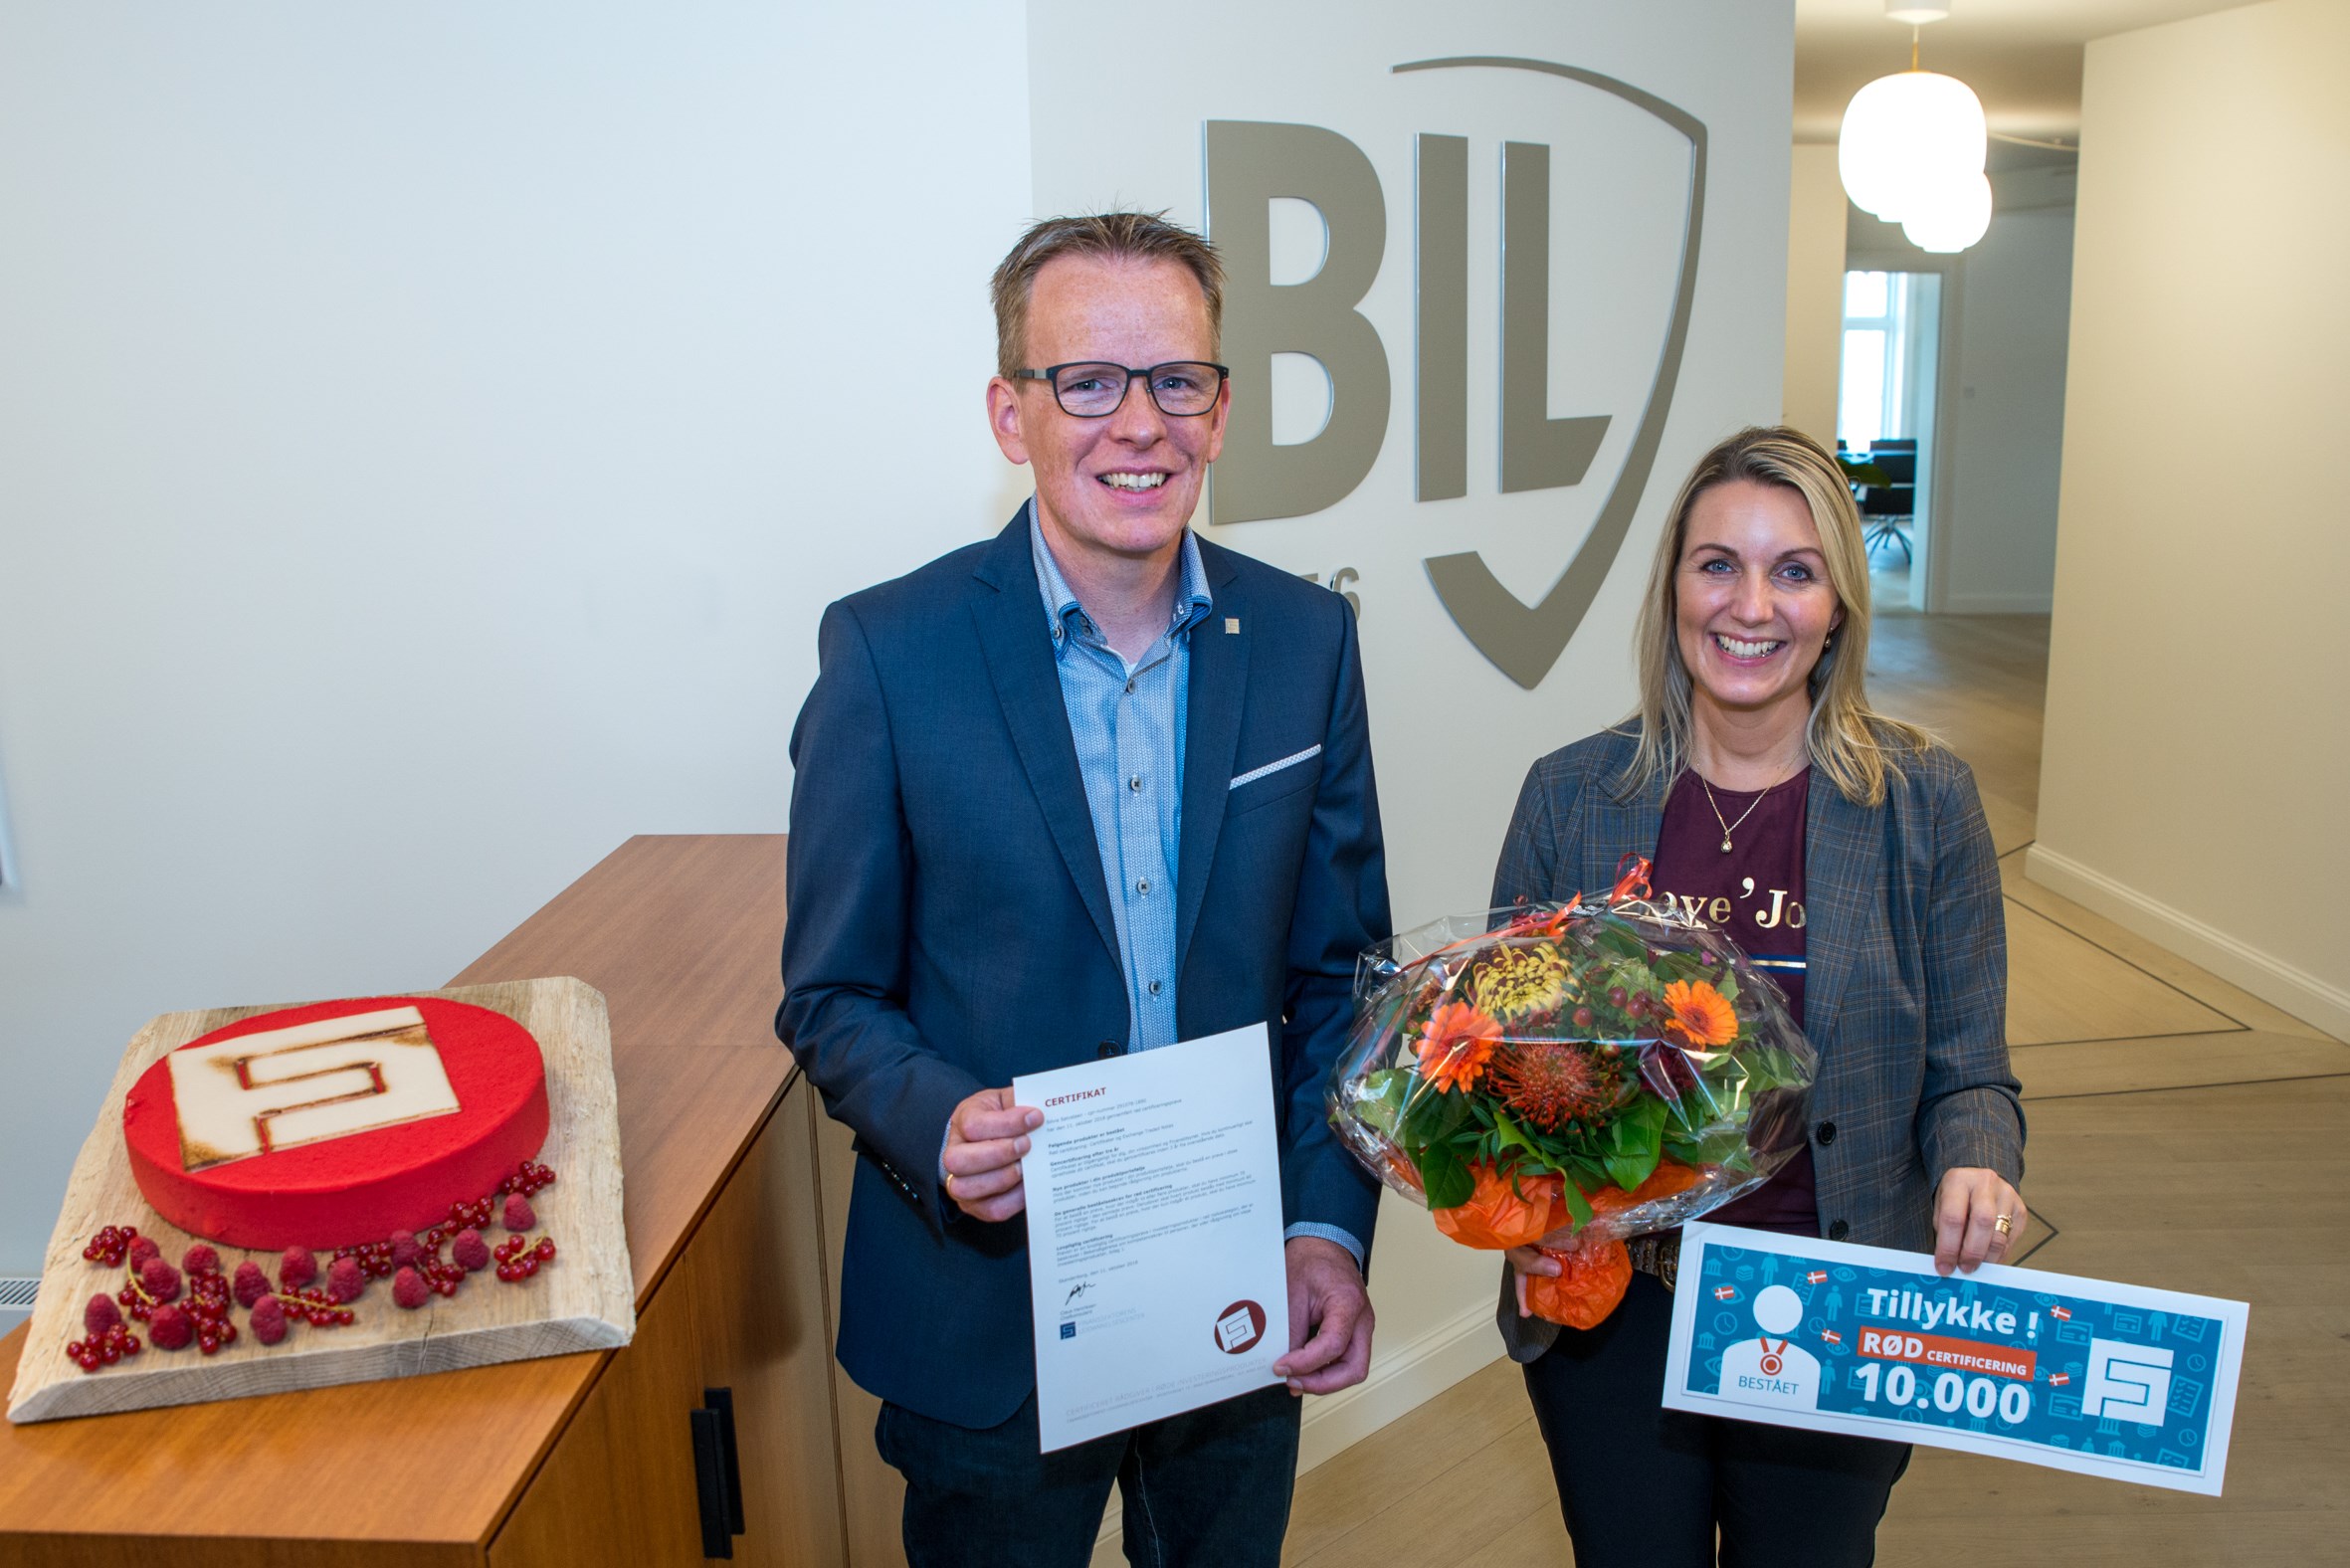 Silvia Sølvsteen, Senior Investment Advisor i BIL Danmark, brugte kun ét forsøg, da hun i torsdags bestod en rød certificeringstest. Det betyder, at hun nu er certificeret til at rådgive kunder om risikofyldte investeringsprodukter de næste 3 år, hvorefter hun skal tage en ny test.